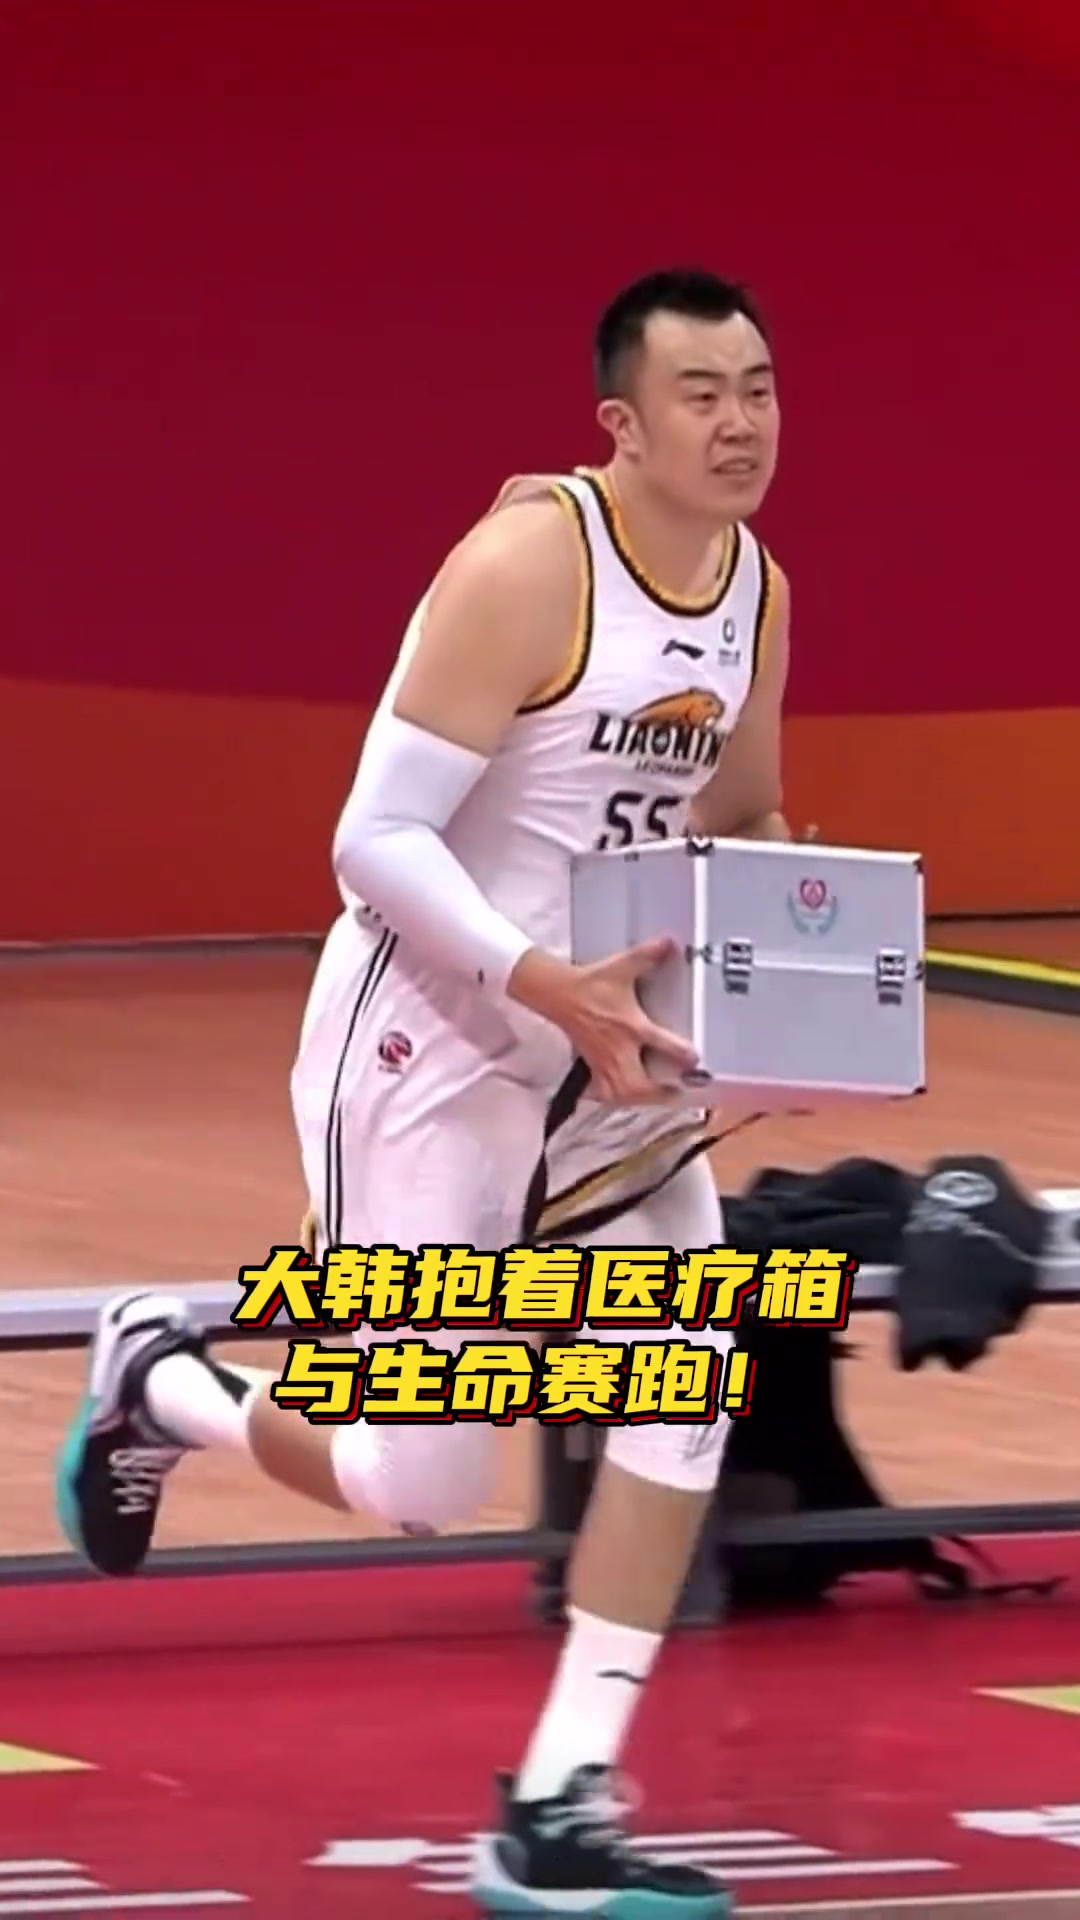 刘雁宇比赛中倒地后队医立刻冲进现场韩德君抱医疗箱飞奔